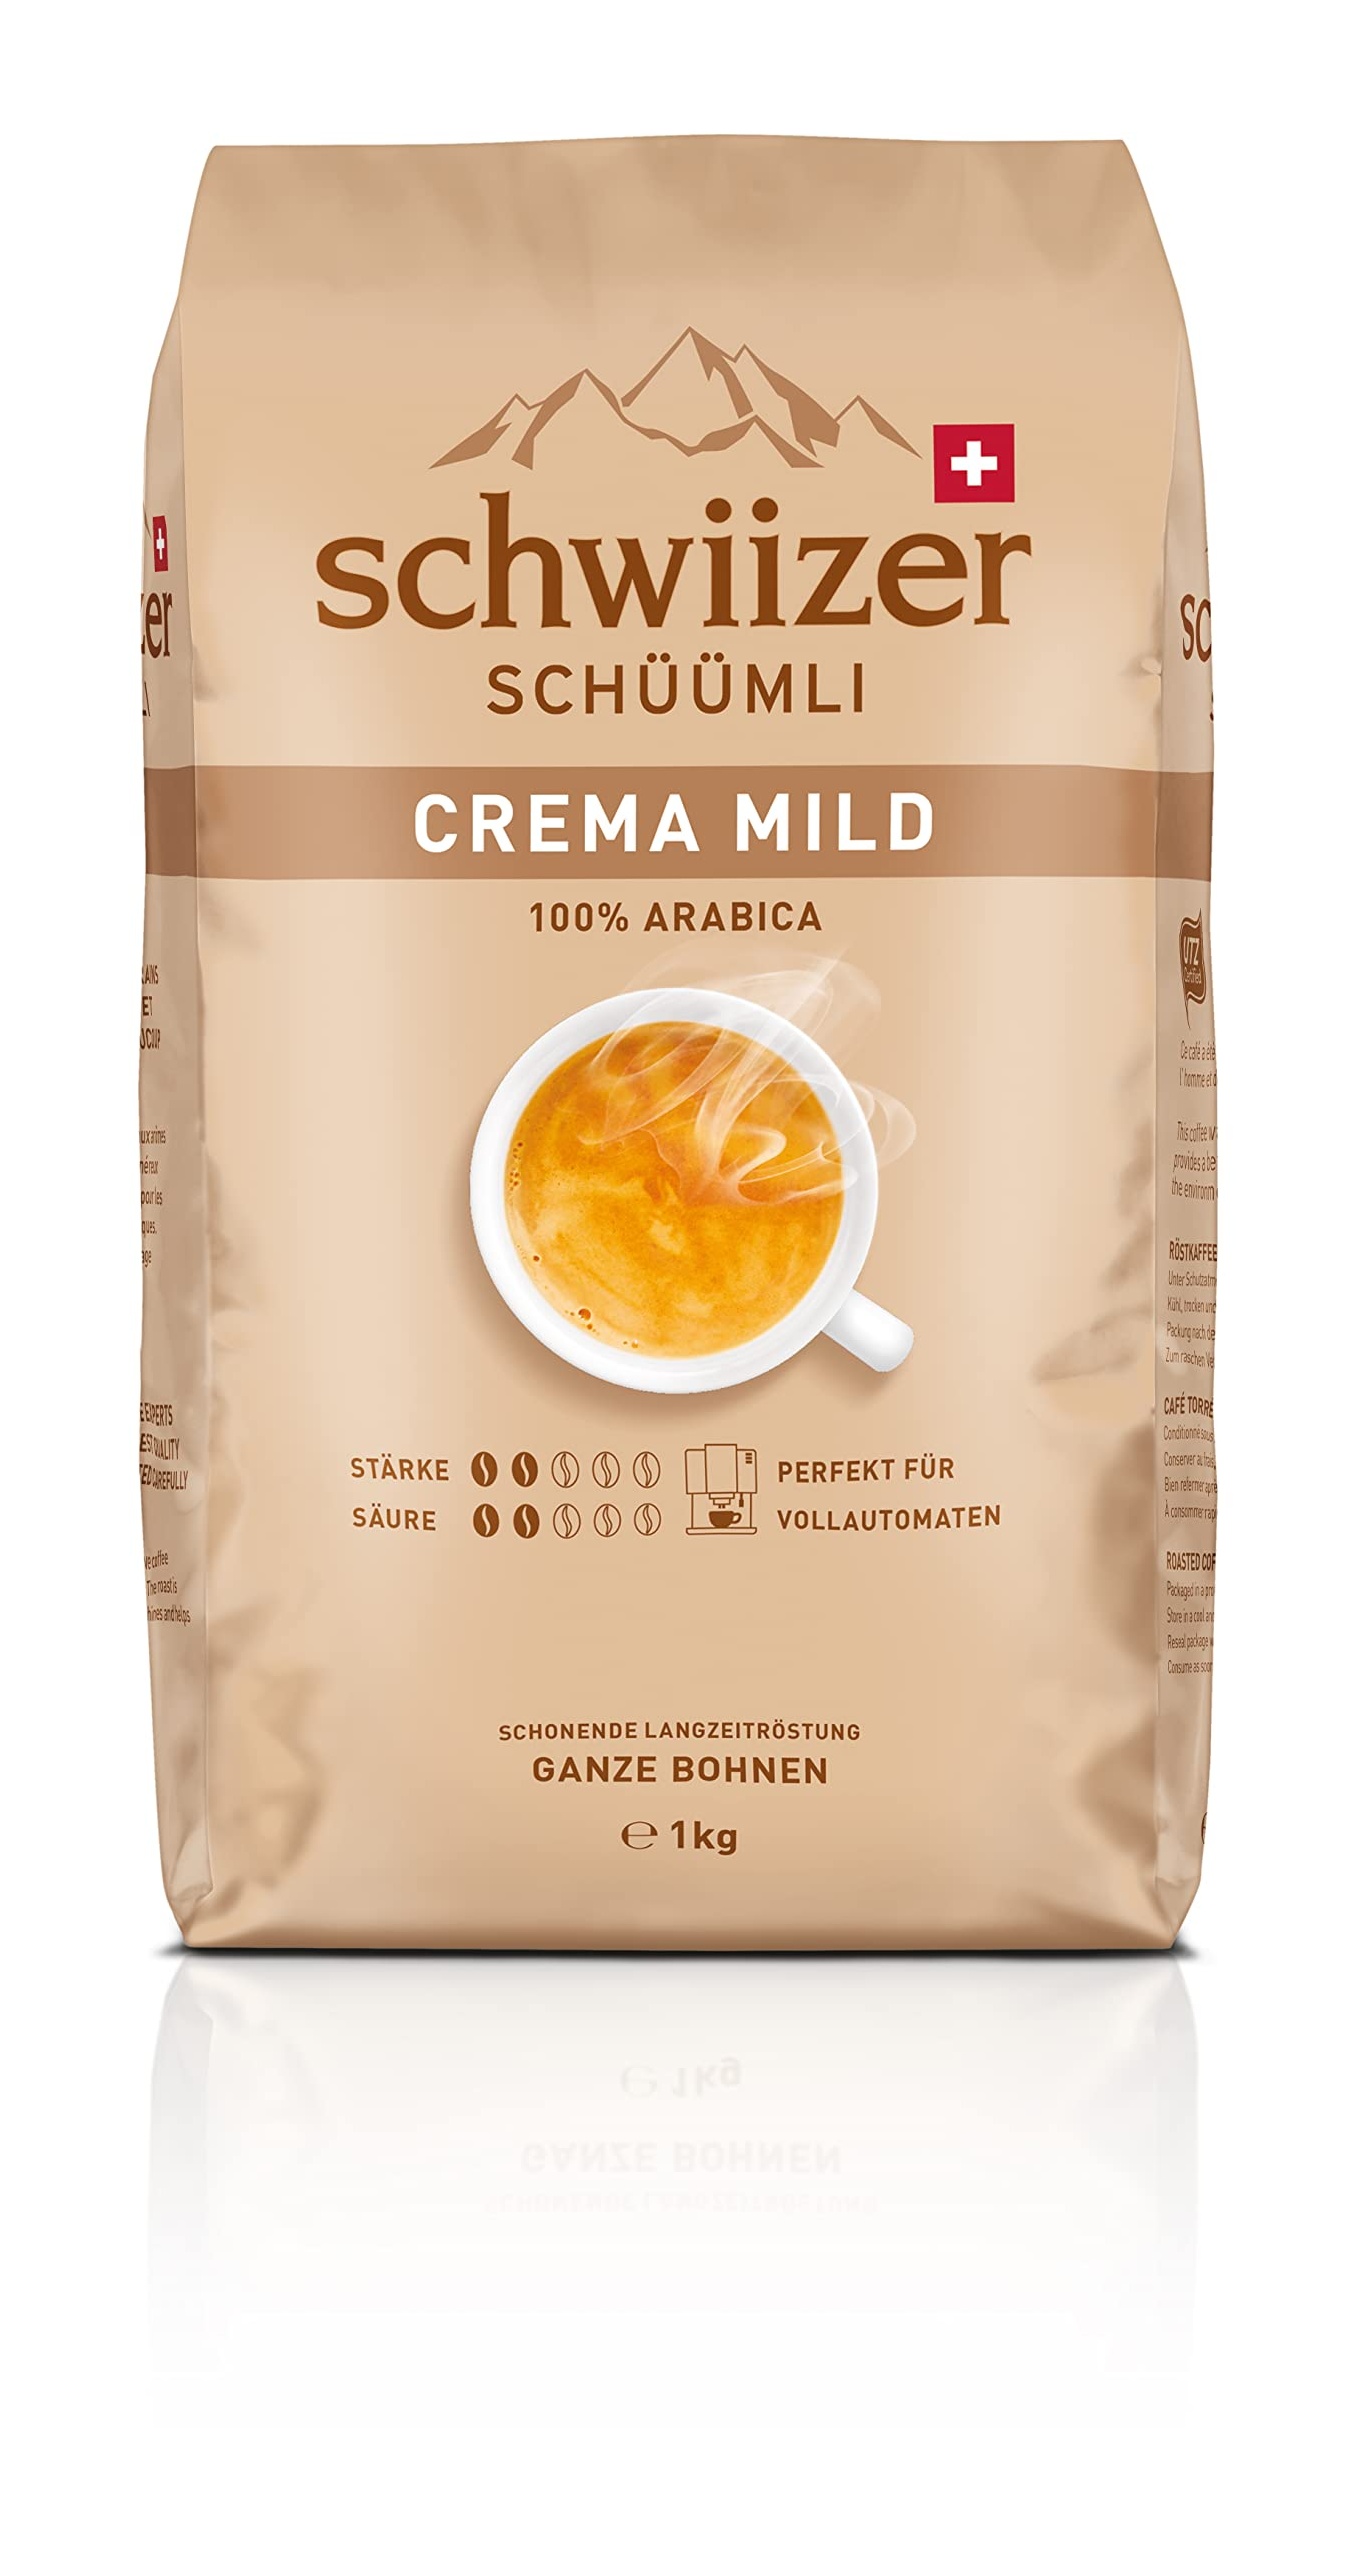 schwiizer schmli crema mild